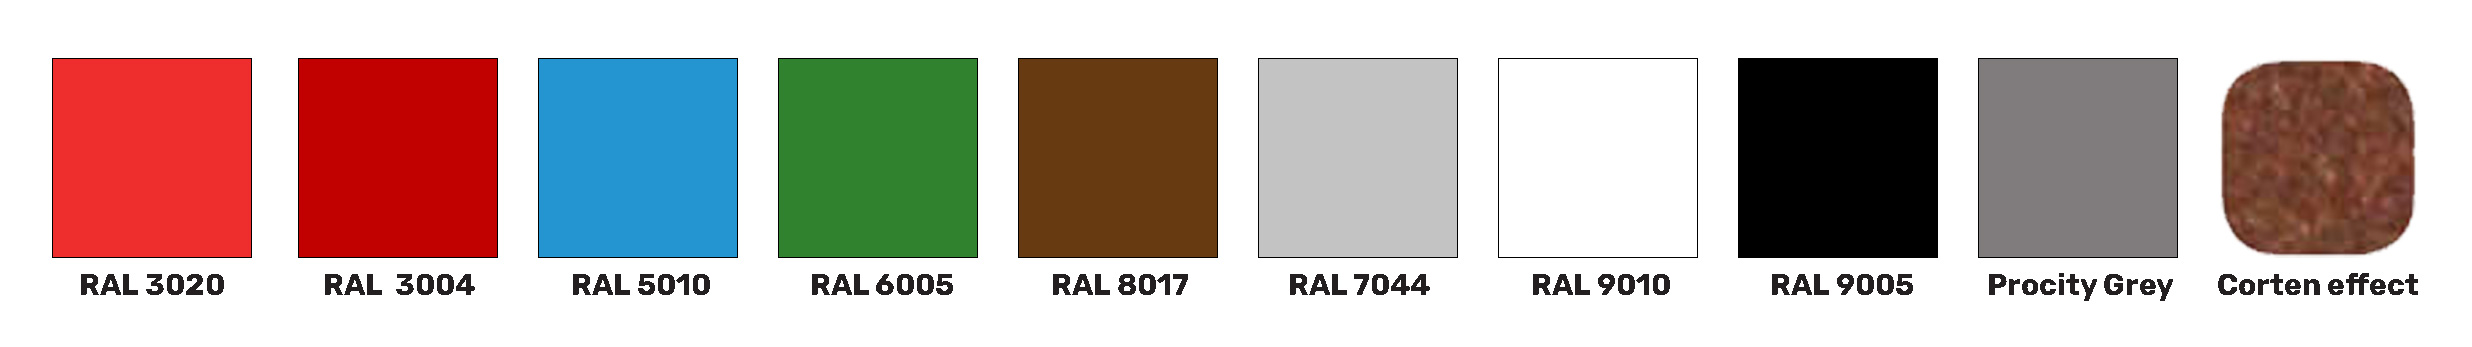 colour options for Procity range